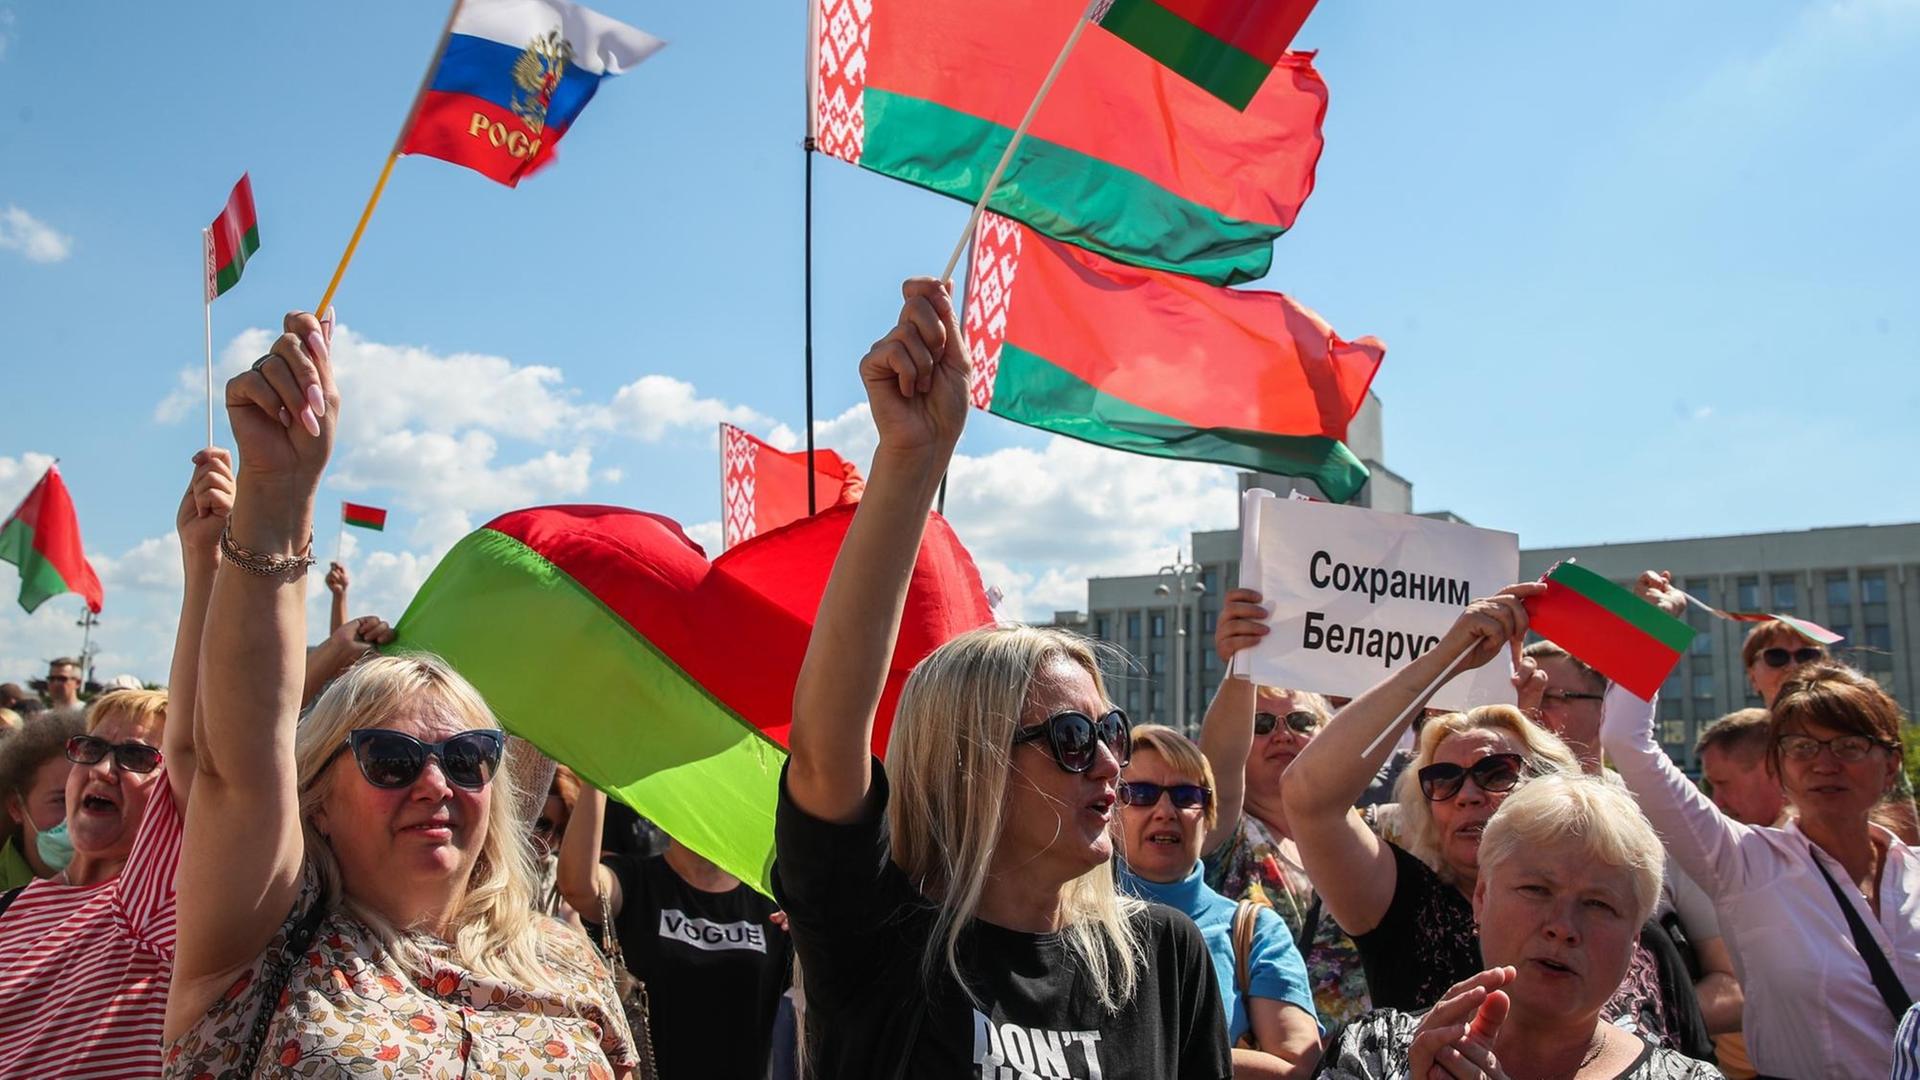 Demonstrierende auf dem Unabhängigkeitsplatz in Minsk, die für den Präsidenten Alexander Lukaschenko protestieren. Auf einem Schild steht "Lasst uns Belarus retten".